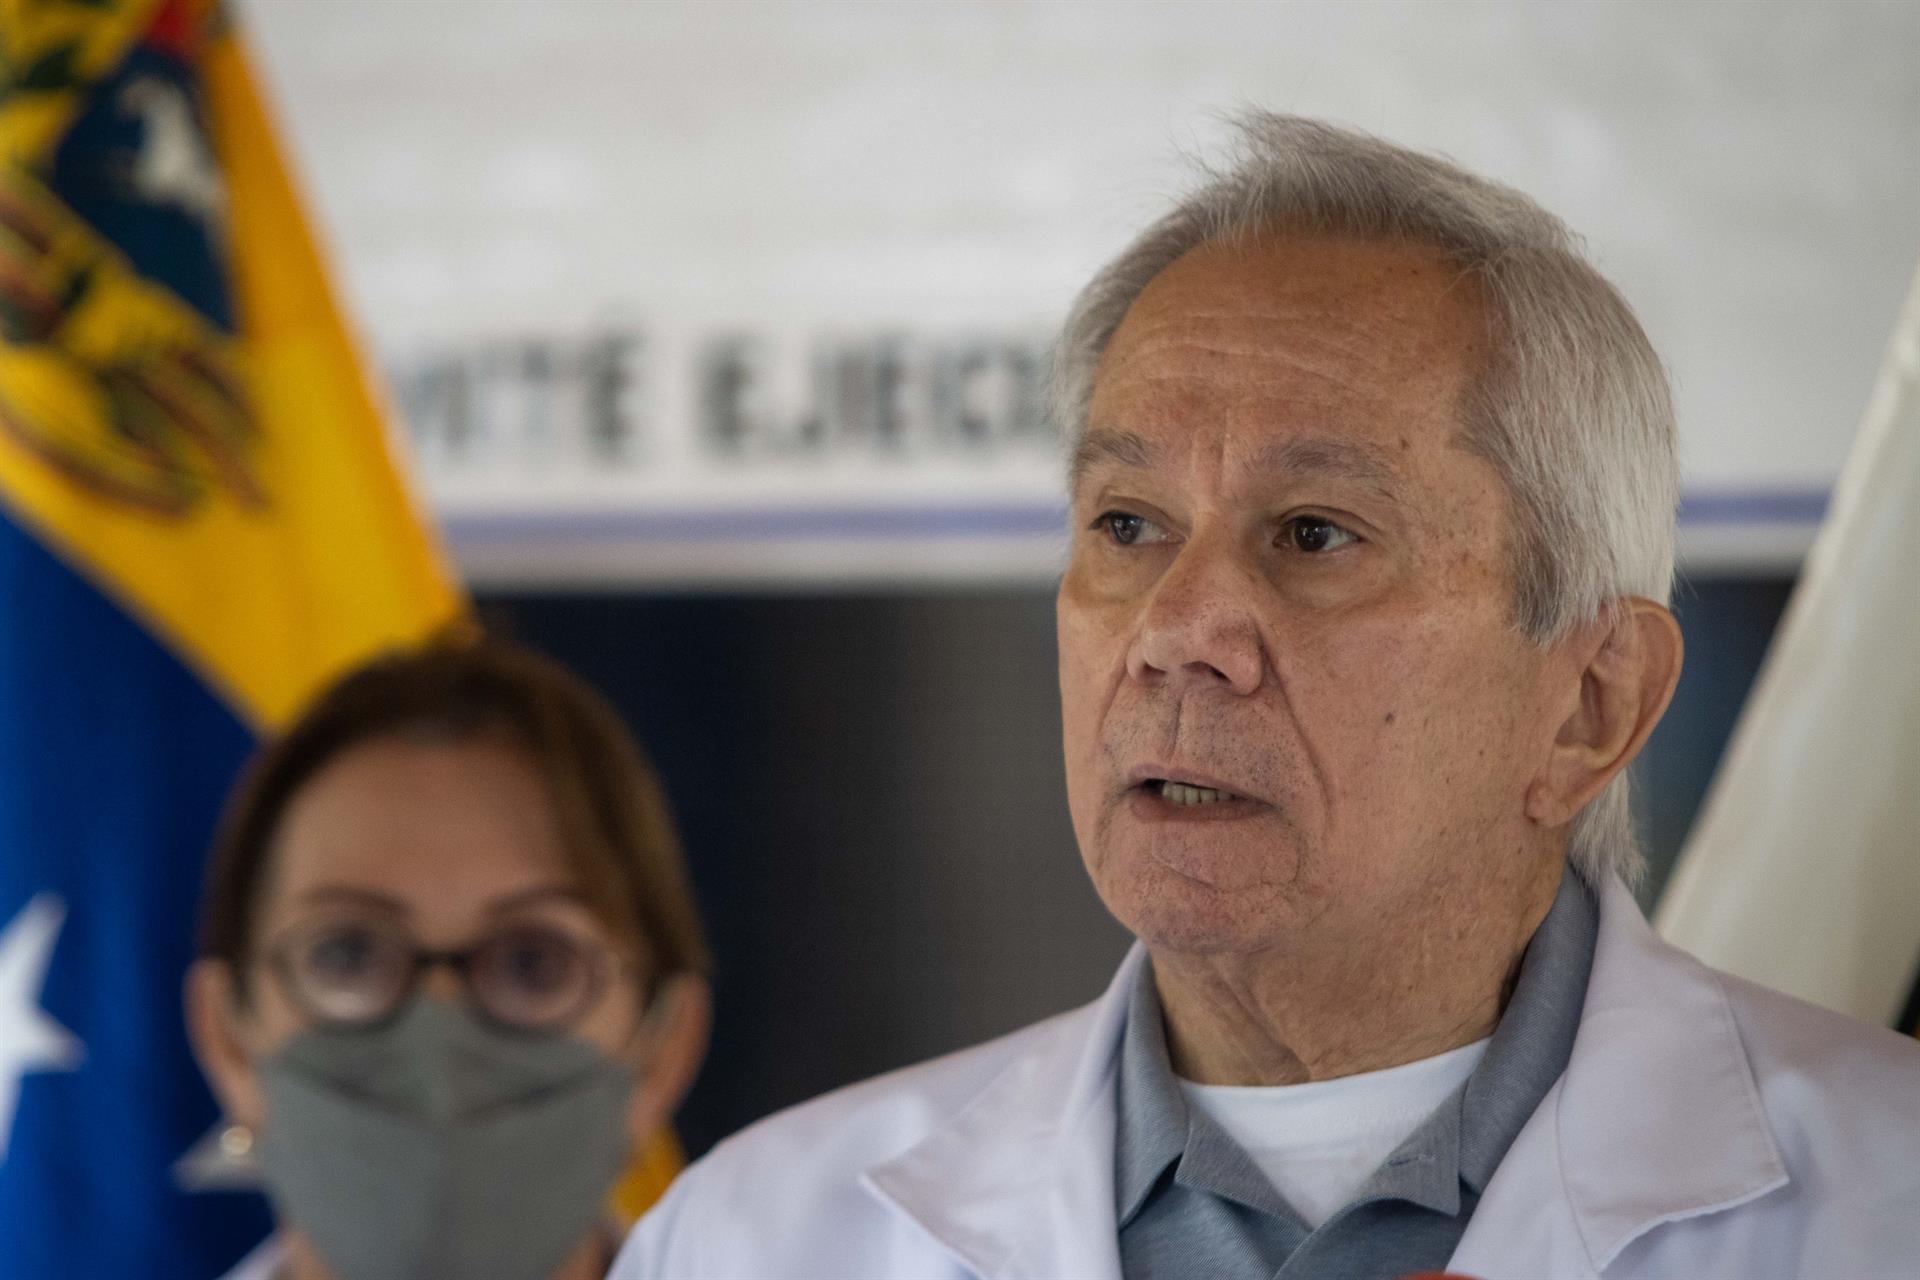 Federación Médica descarta casos de fiebre tifoidea en Venezuela, pero reporta “enfermedades hídricas” por las lluvias